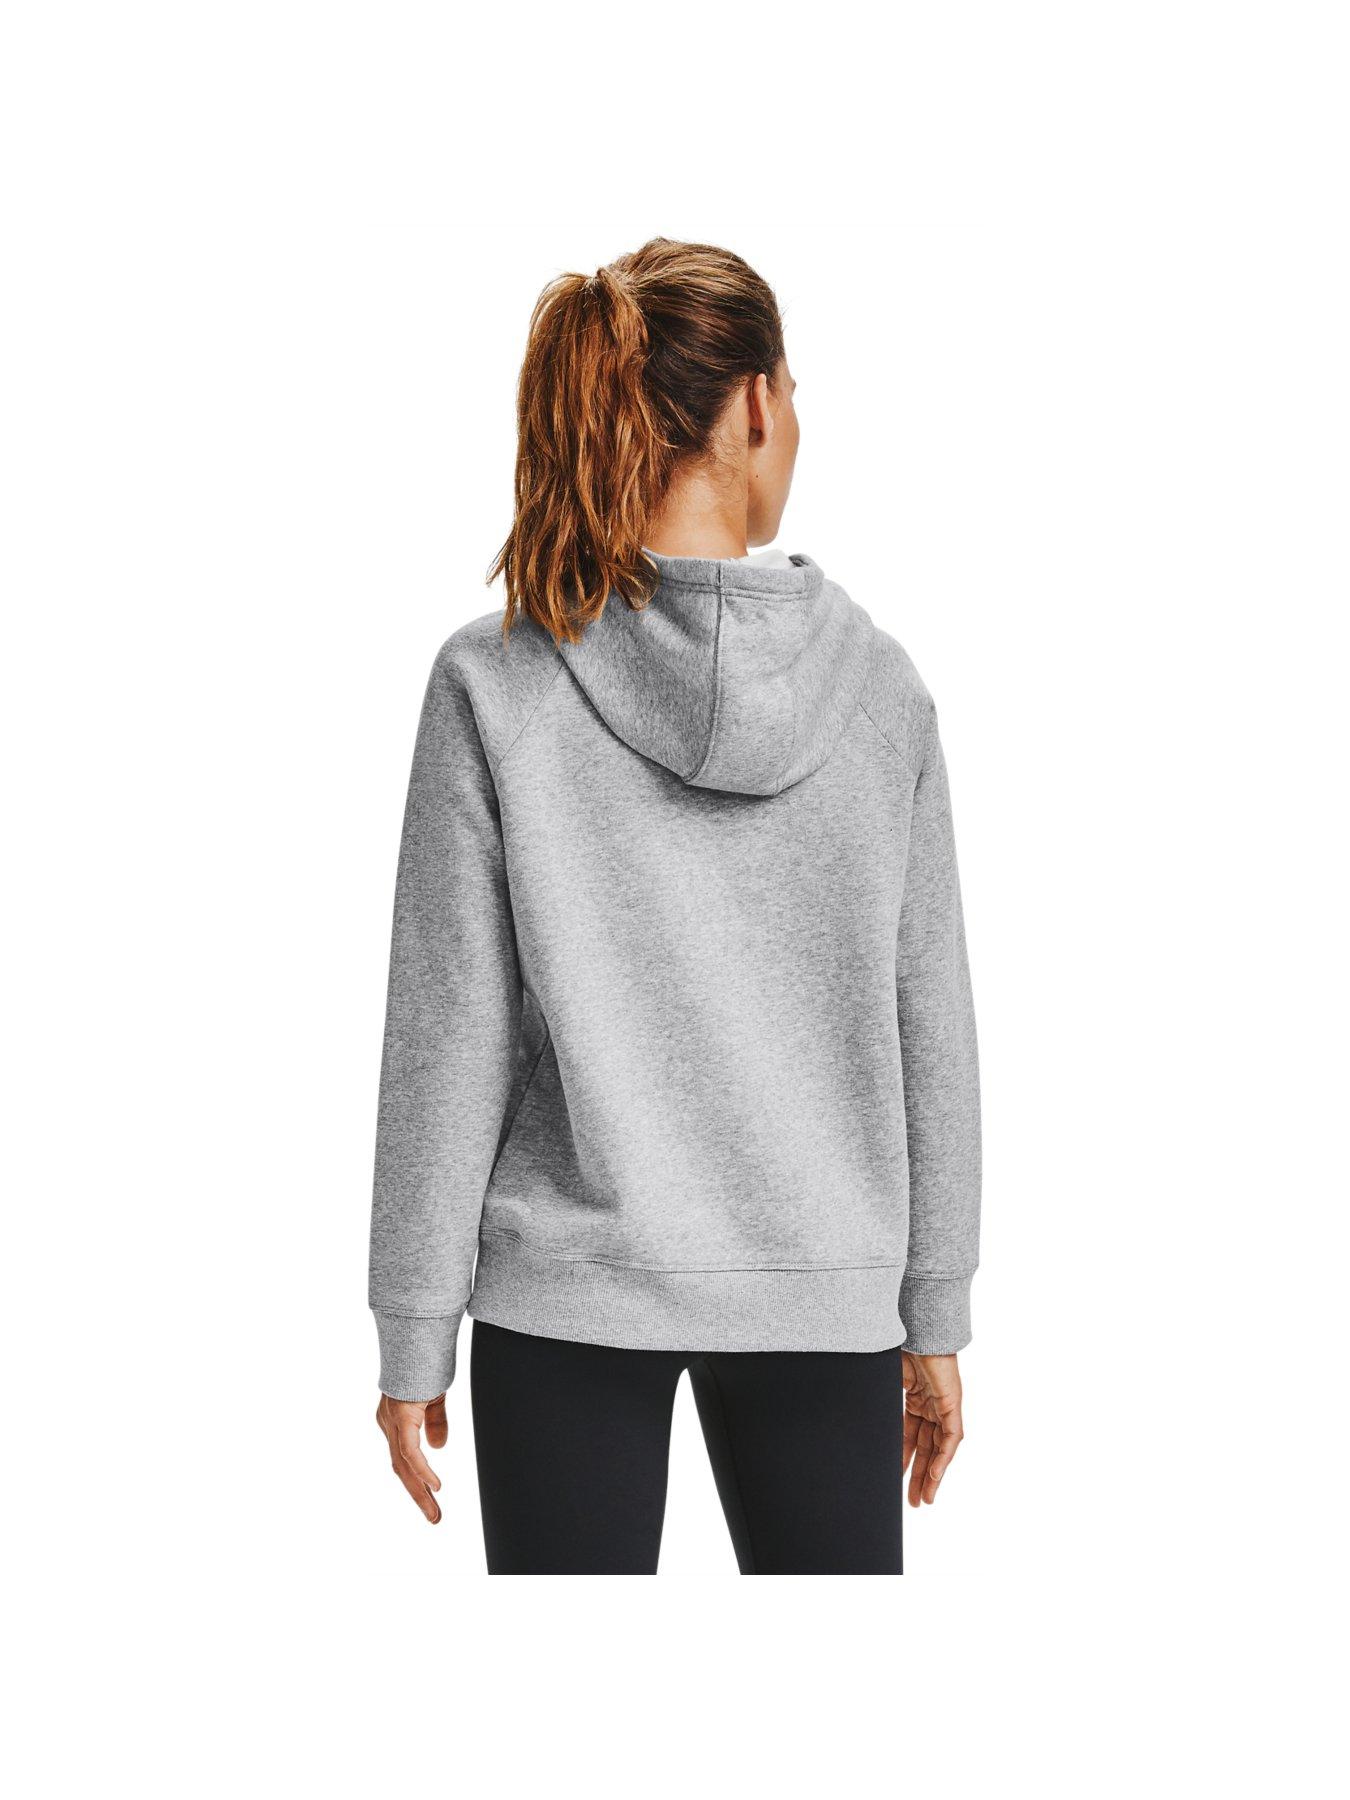 Hoodies & Sweatshirts Rival Fleece HB Hoodie - Grey/Black